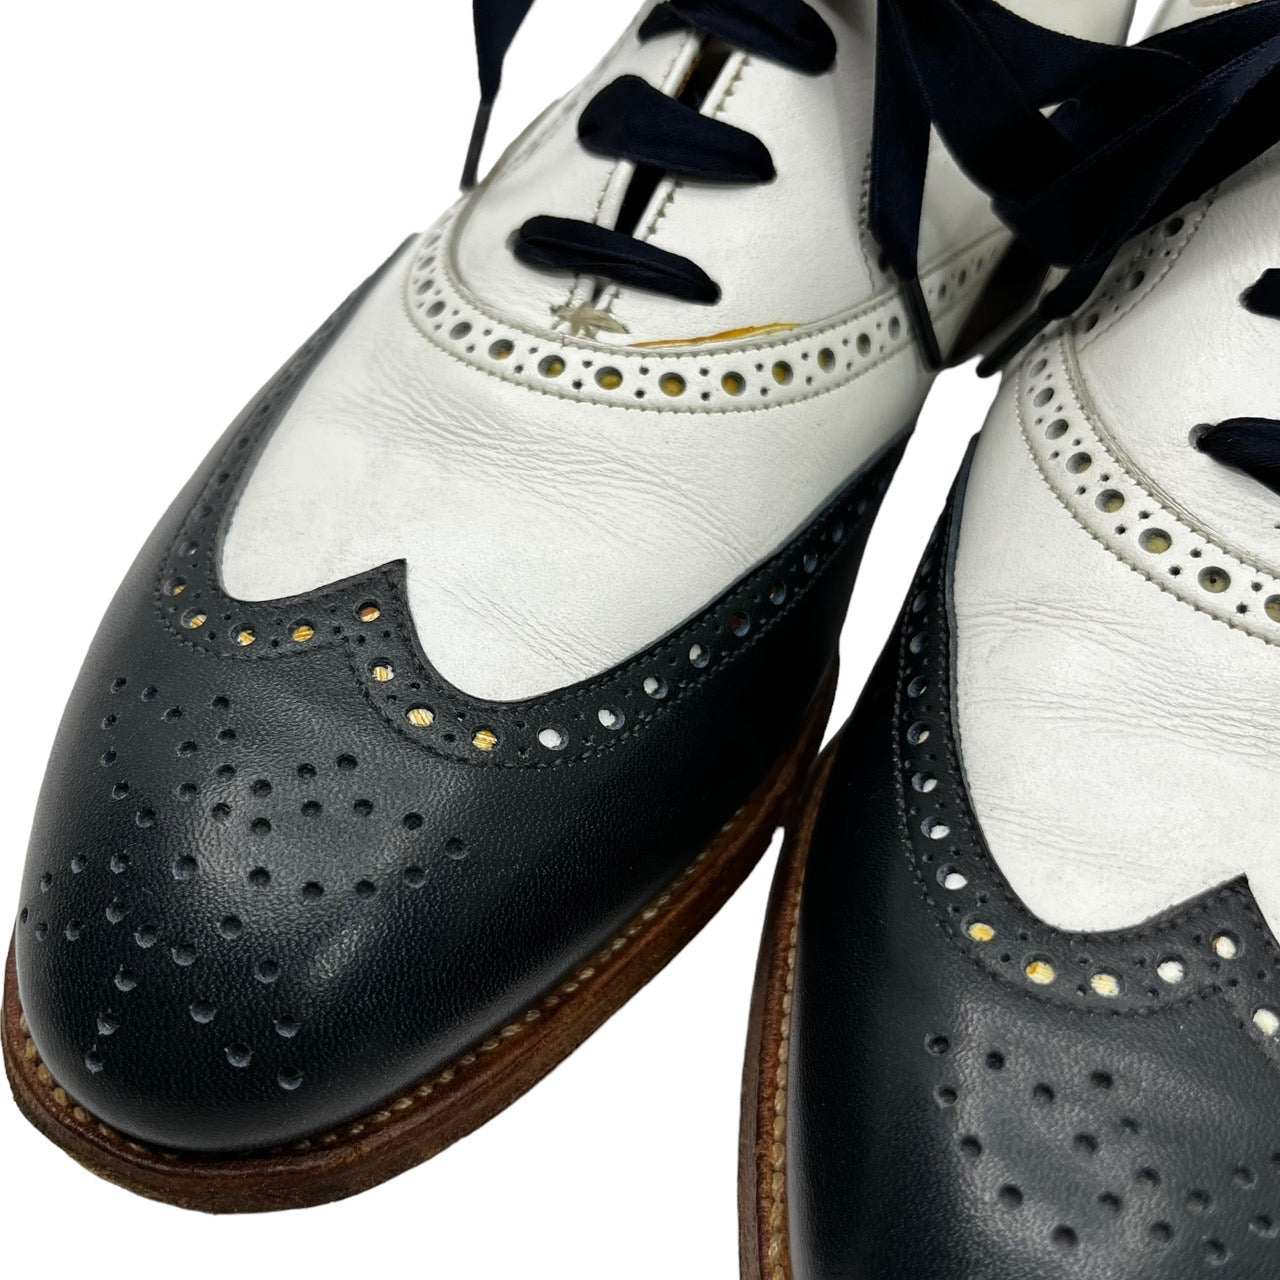 CROCKETT&JONES(クロケット&ジョーンズ) 「JENNY」 bicolor leather shoes バイカラー レザーシューズ 本革 4618・8033・07 SIZE 5C(23.5～24.0cm程度) ホワイト×ネイビー 613LAST 箱付